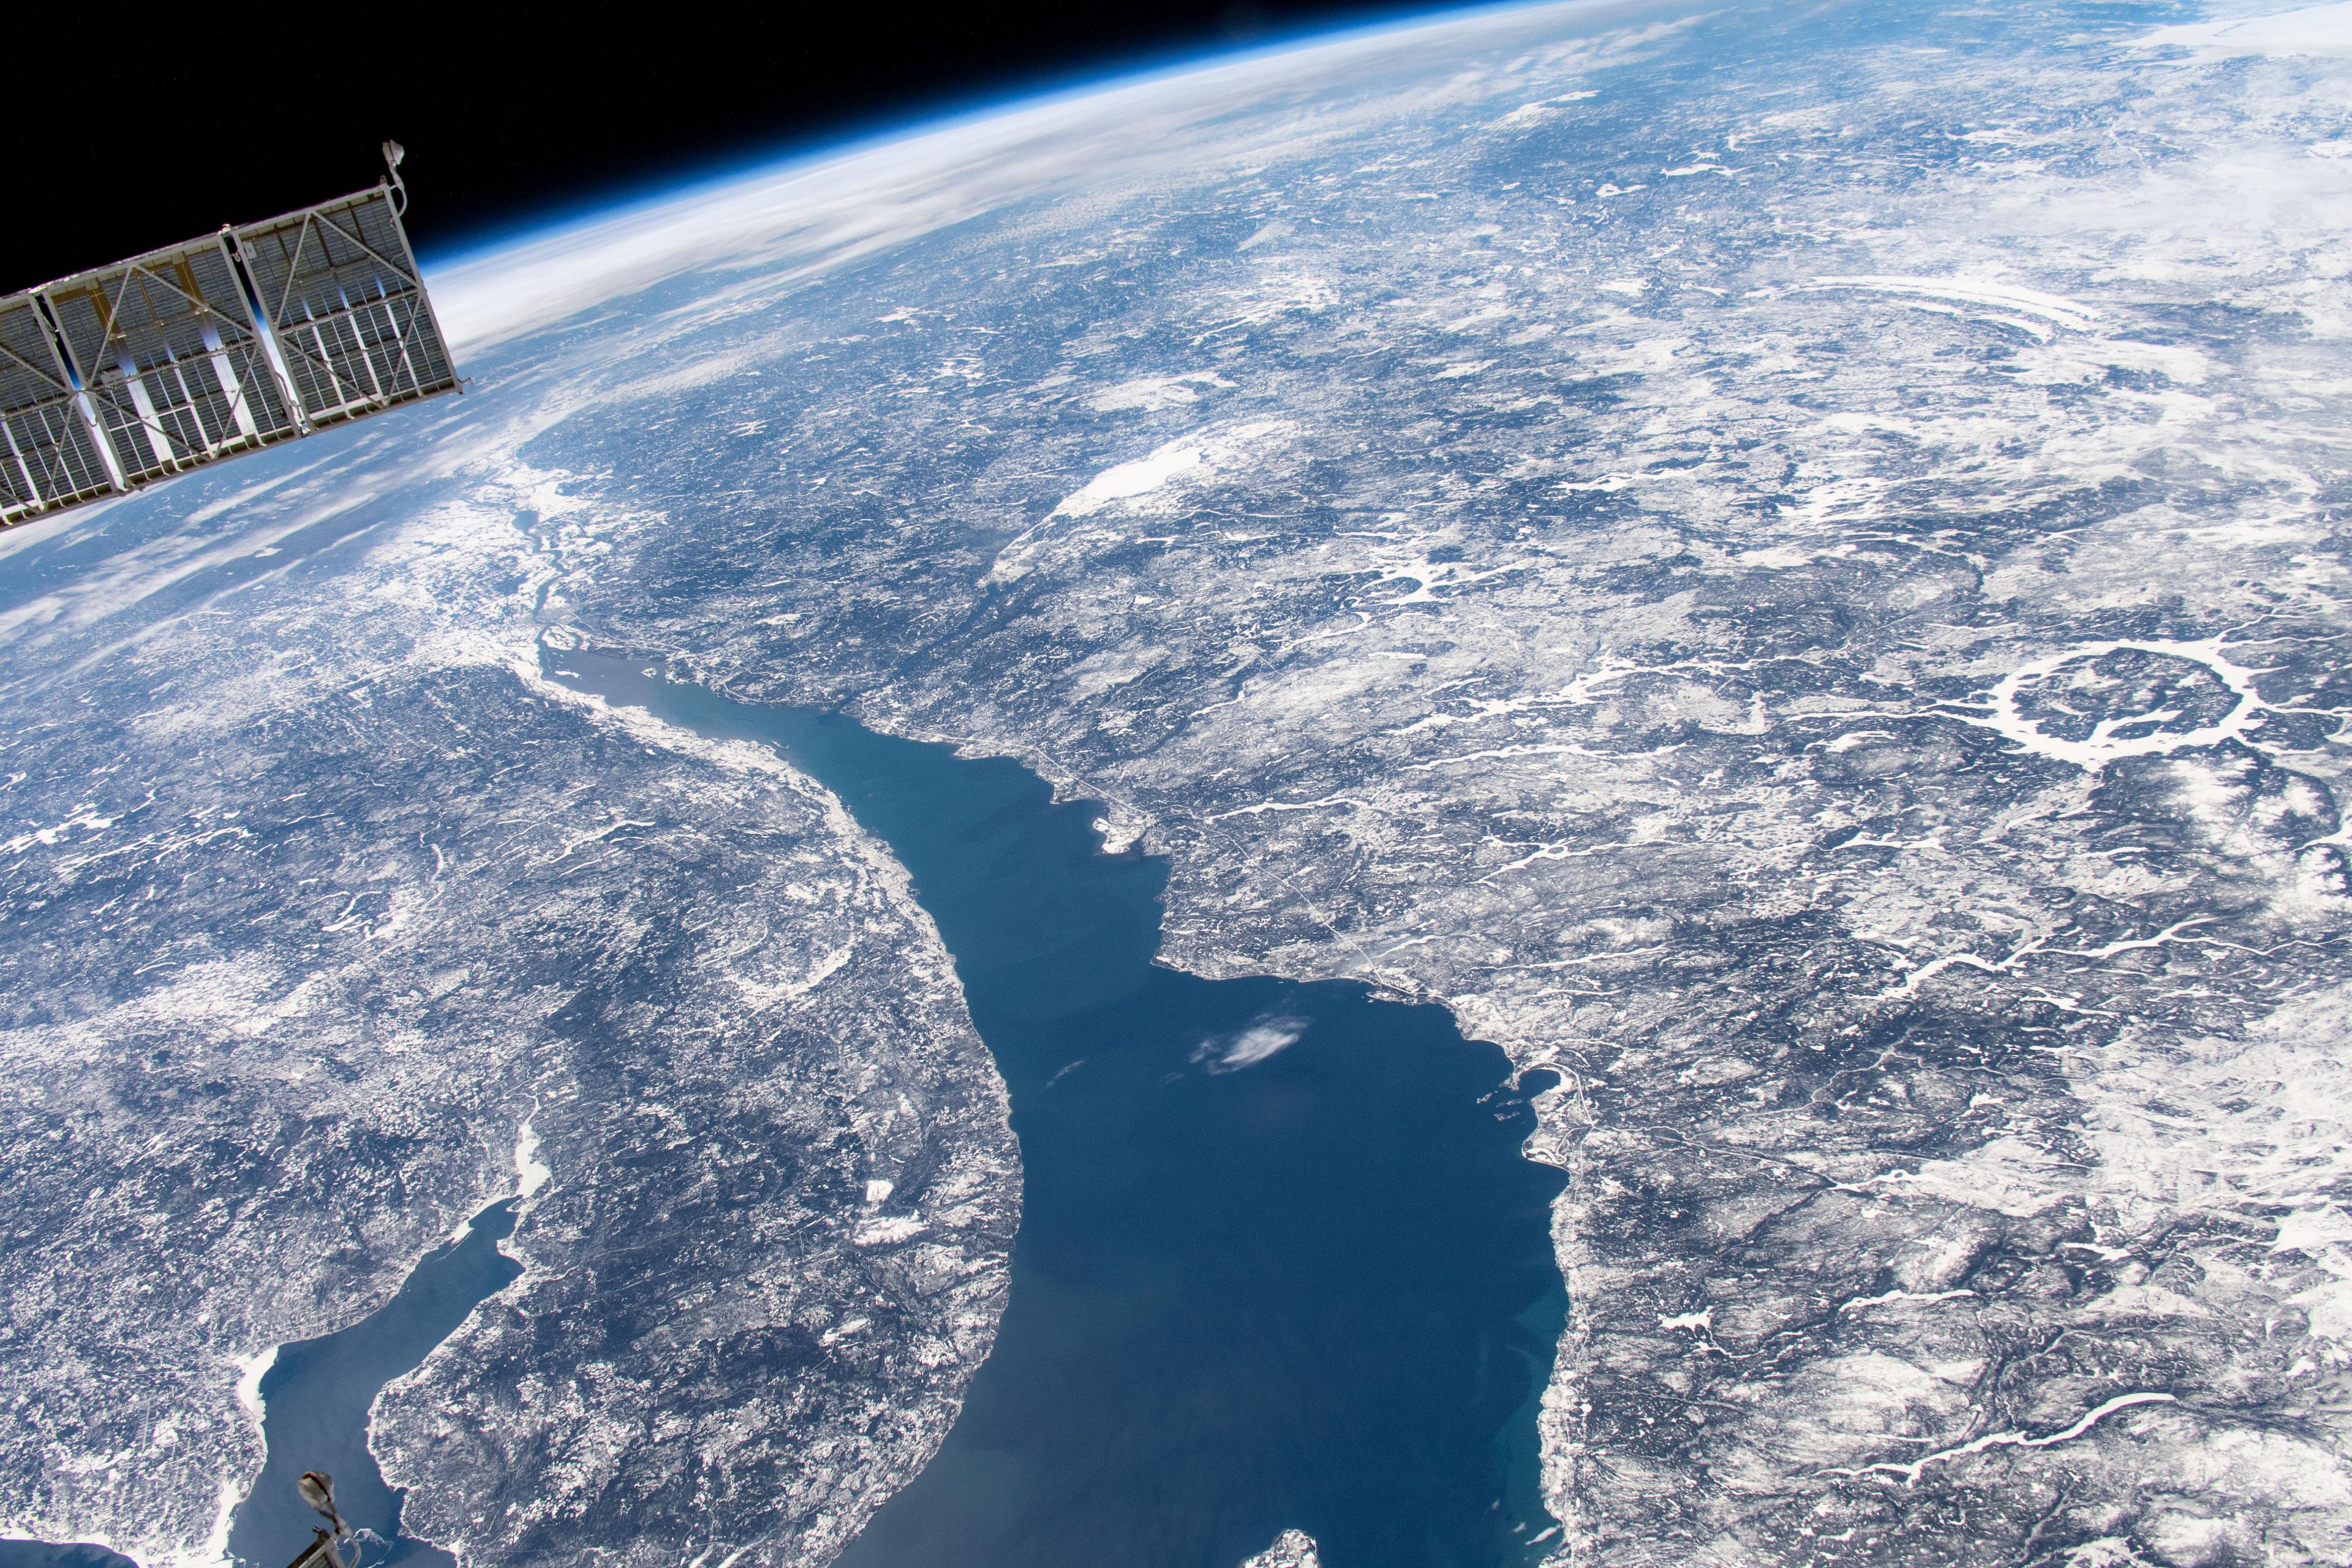 صورة للأرض من محطّة الفضاء الدوليّة يظهر فيها نهرٌ عريض في أسفل المُنتَصَف واليسار وفوّهة كبيرة مملوءَة بالماء إلى يمين المركز، كما يظهر جزءٌ من المحطّة في أعلى يسار الإطار.